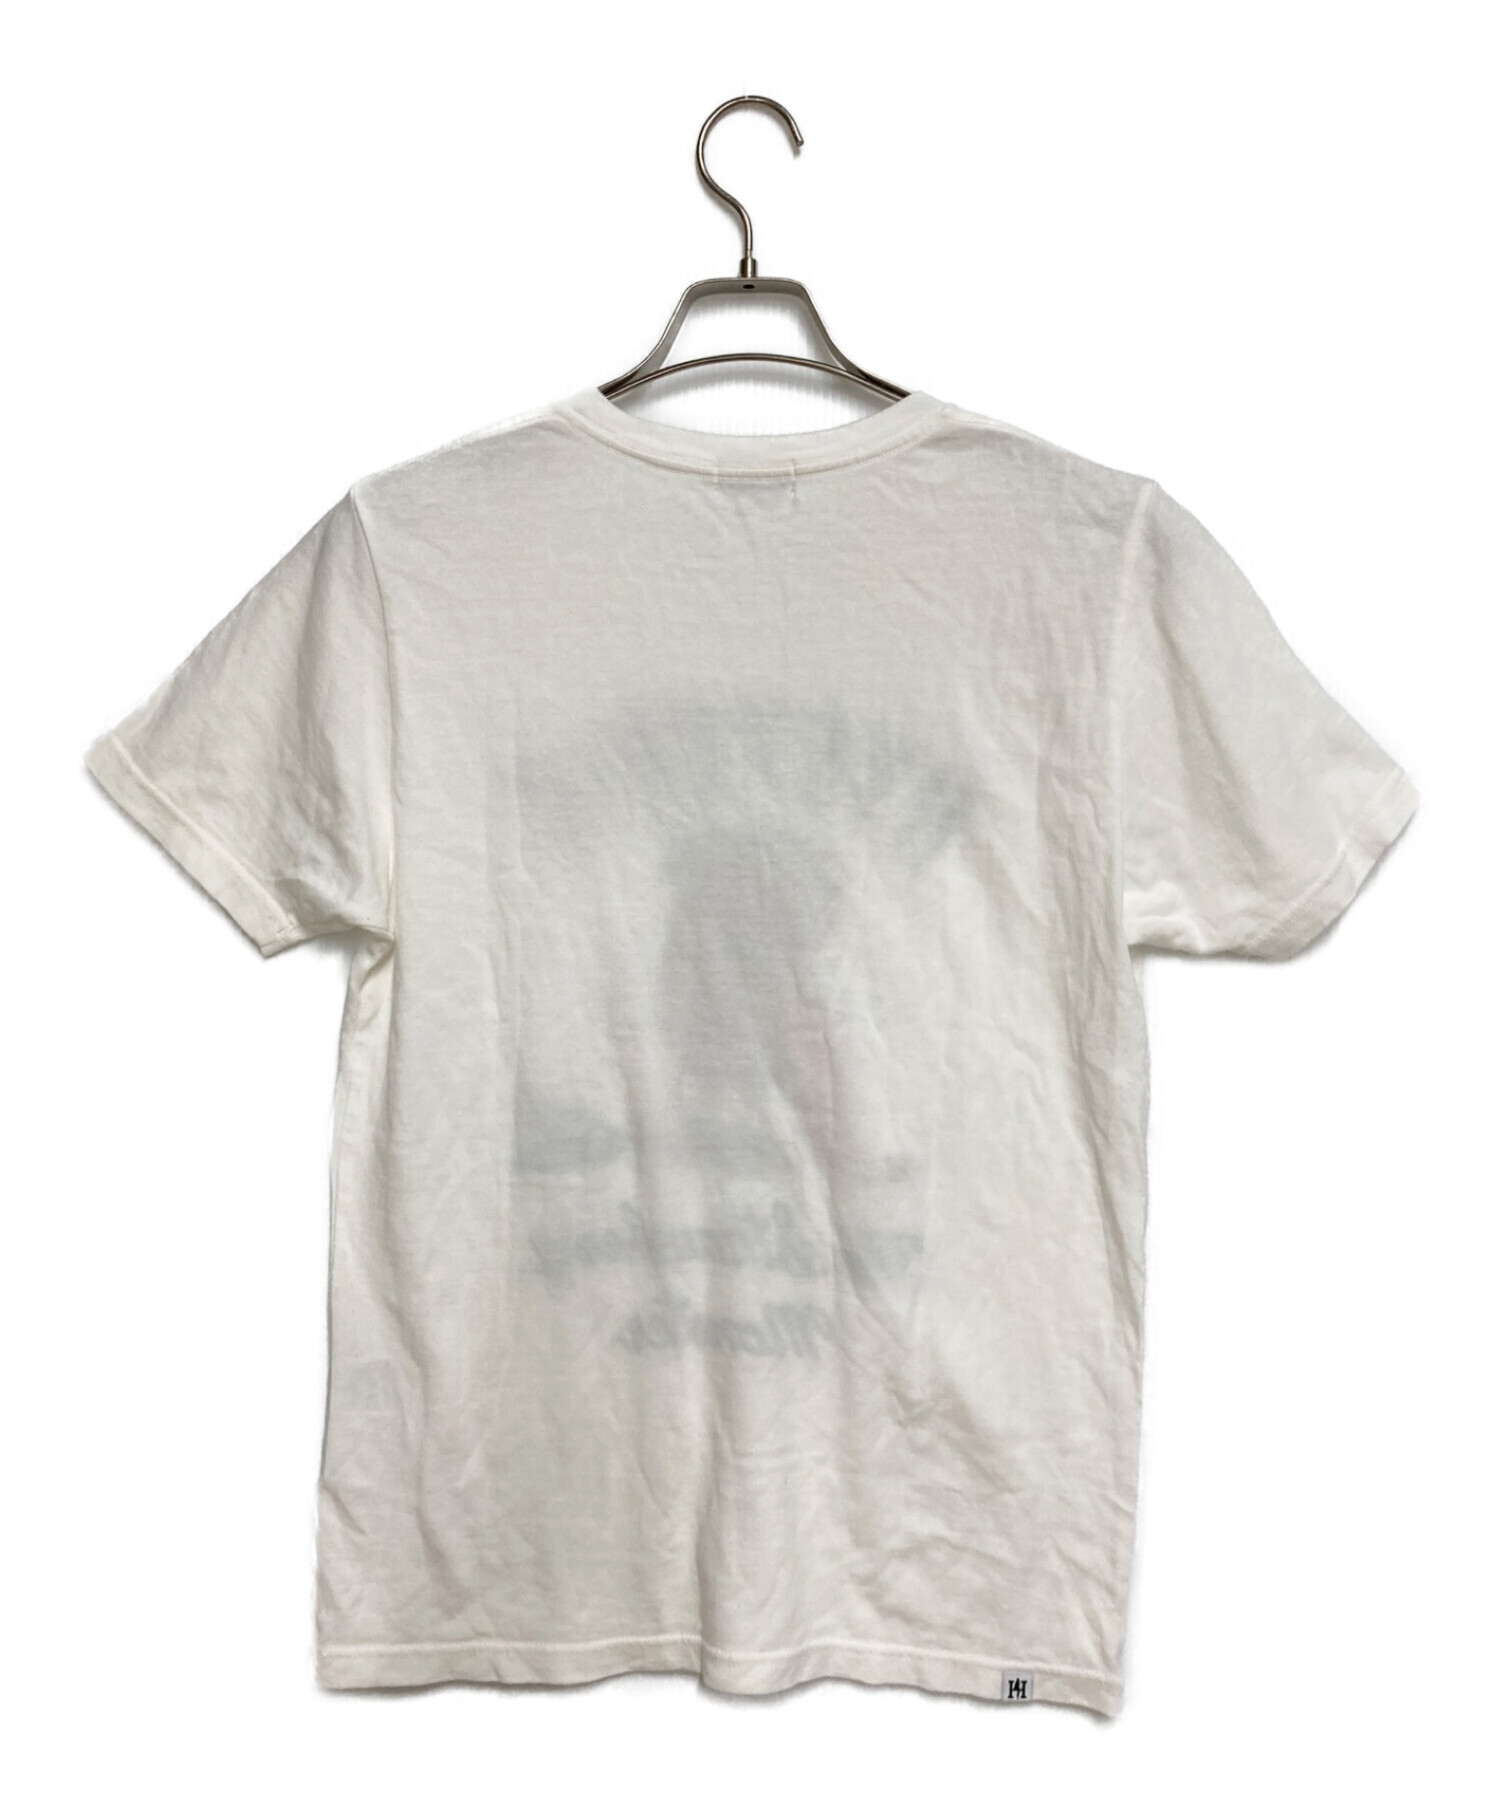 Hysteric Glamour (ヒステリックグラマー) Tシャツ ホワイト サイズ:フリーサイズ